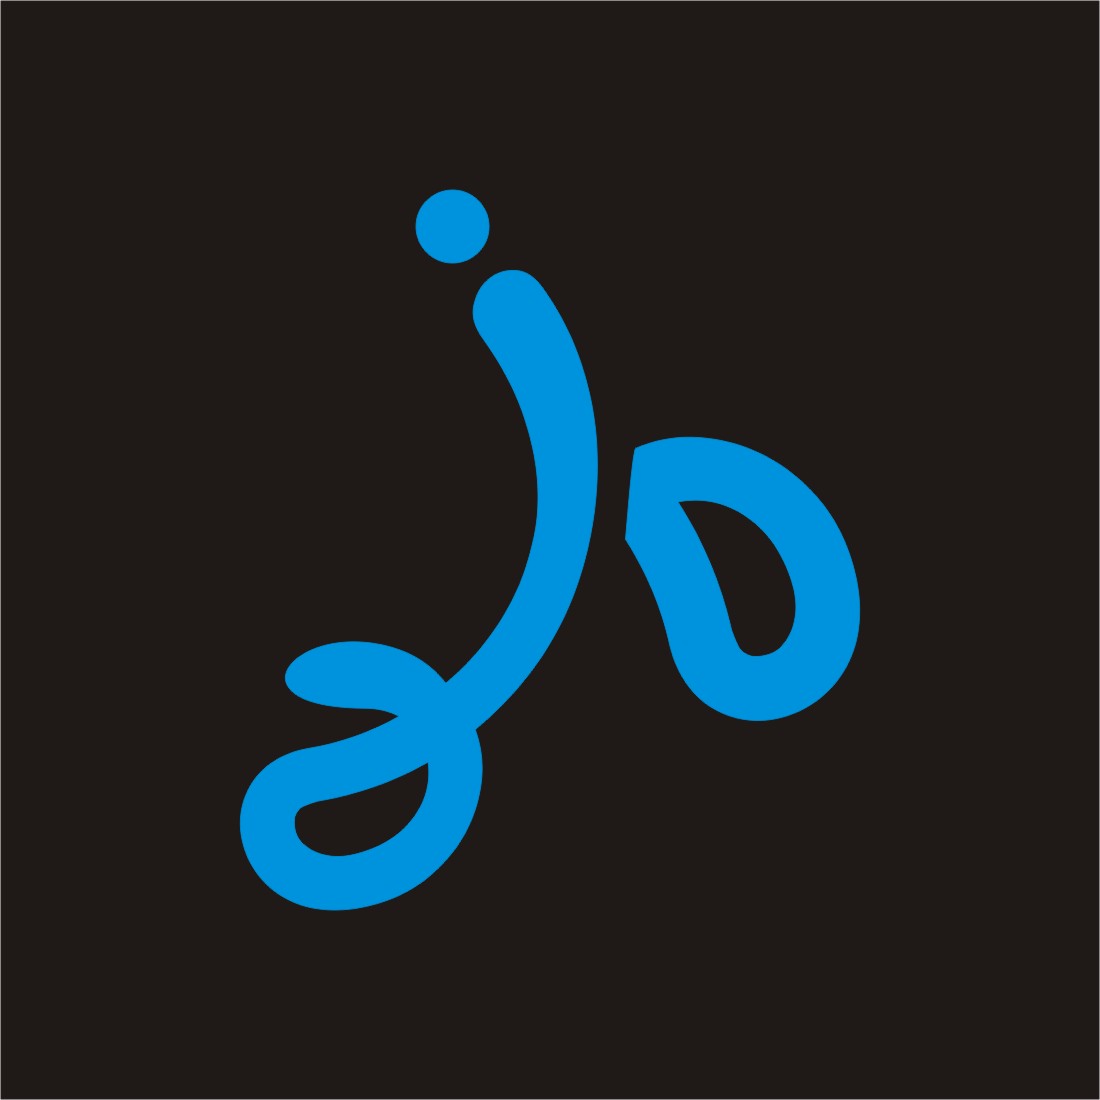 ''I'' monogram professional logo preview image.